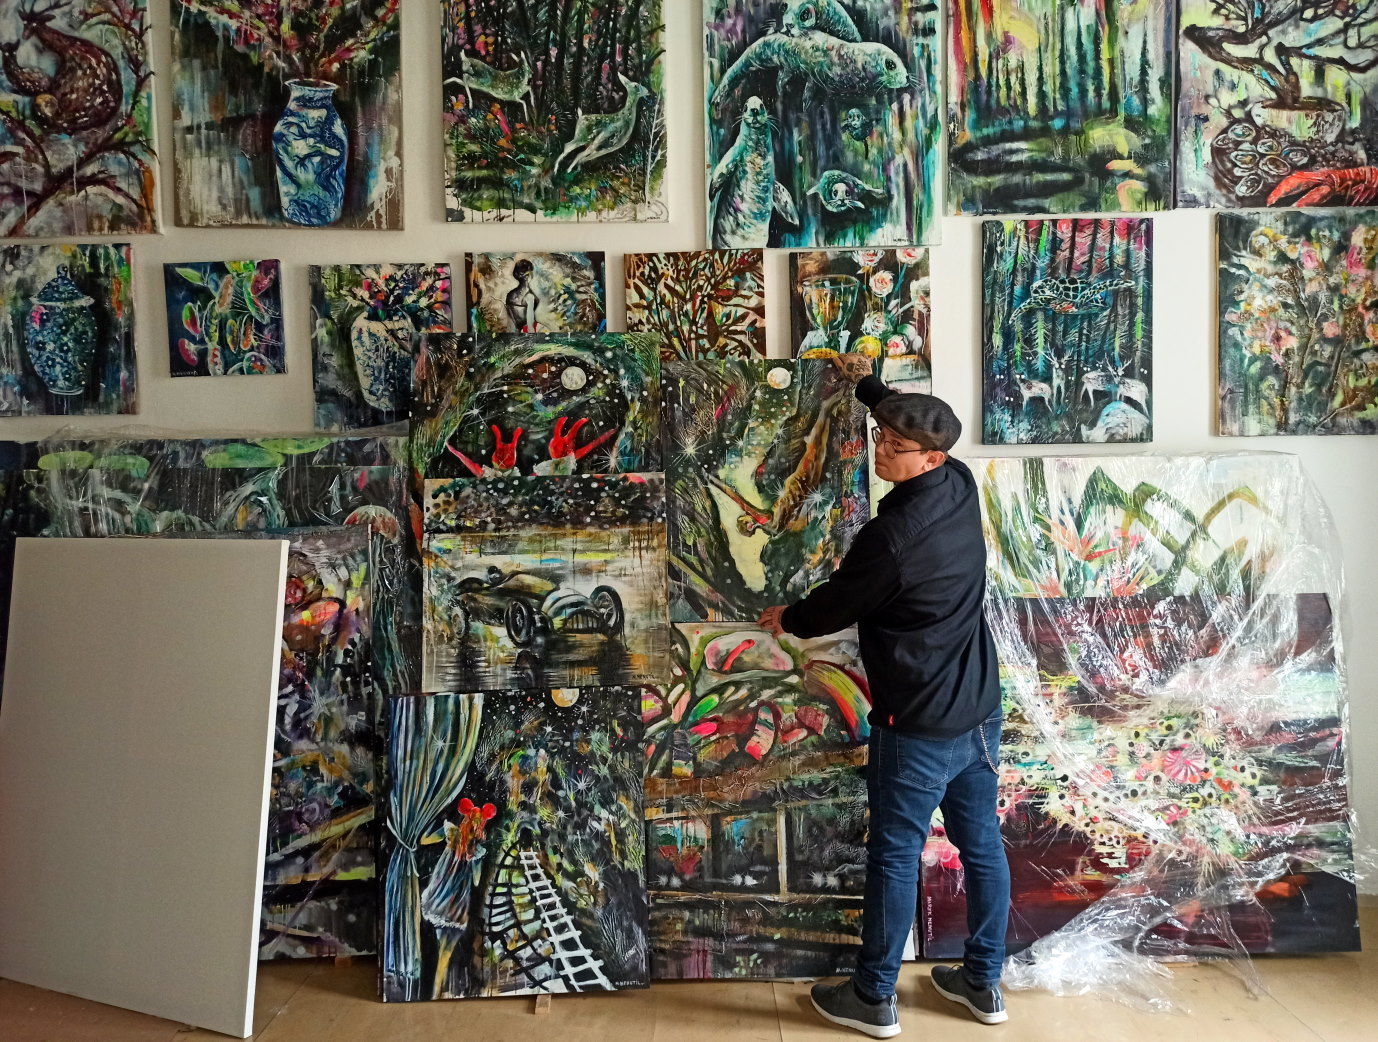 Marek Nenutil in his studio